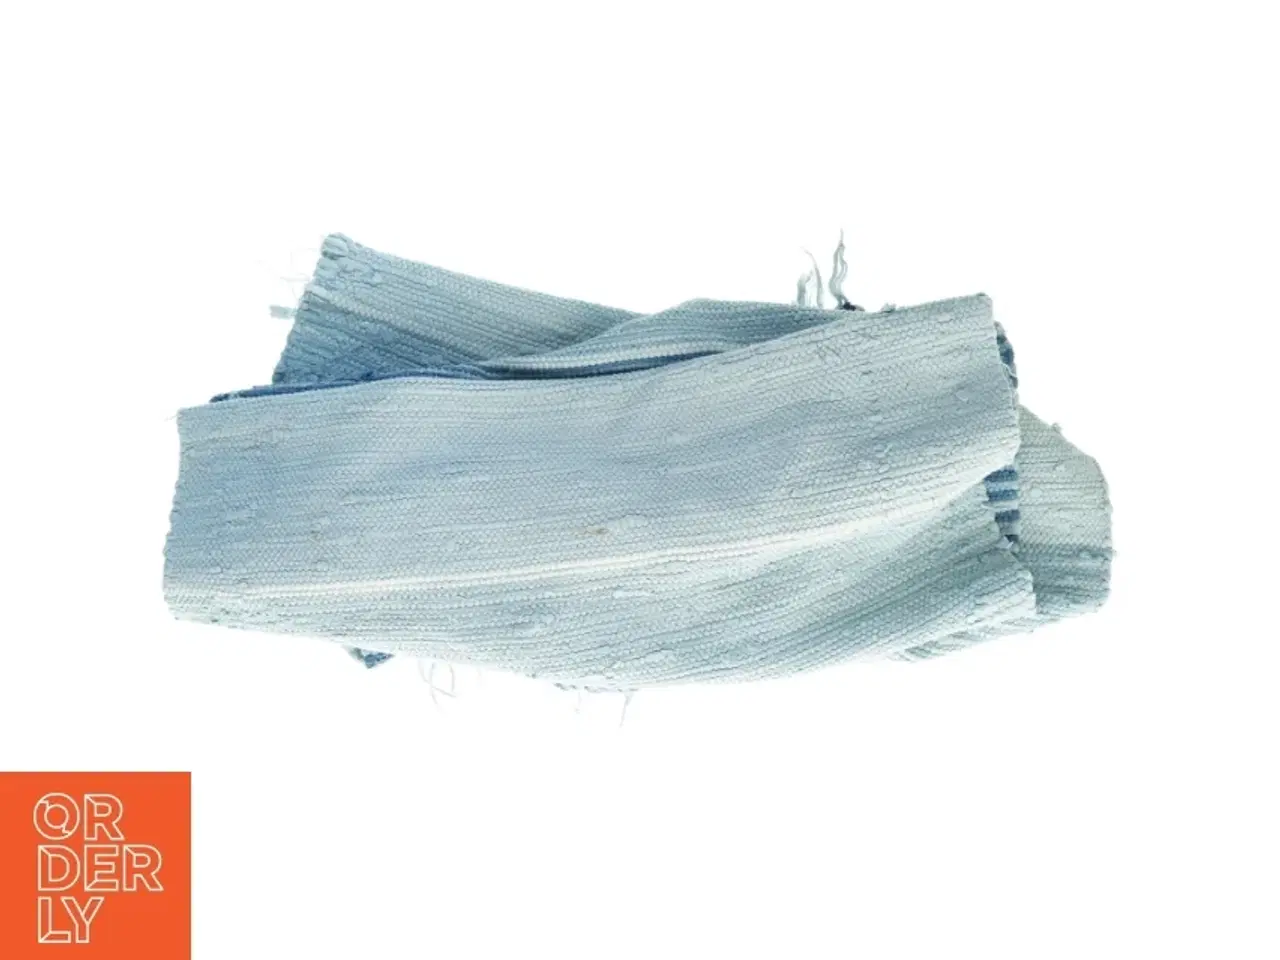 Billede 2 - Blåt håndvævet kludetæppe (str. 73 x 200 cm)